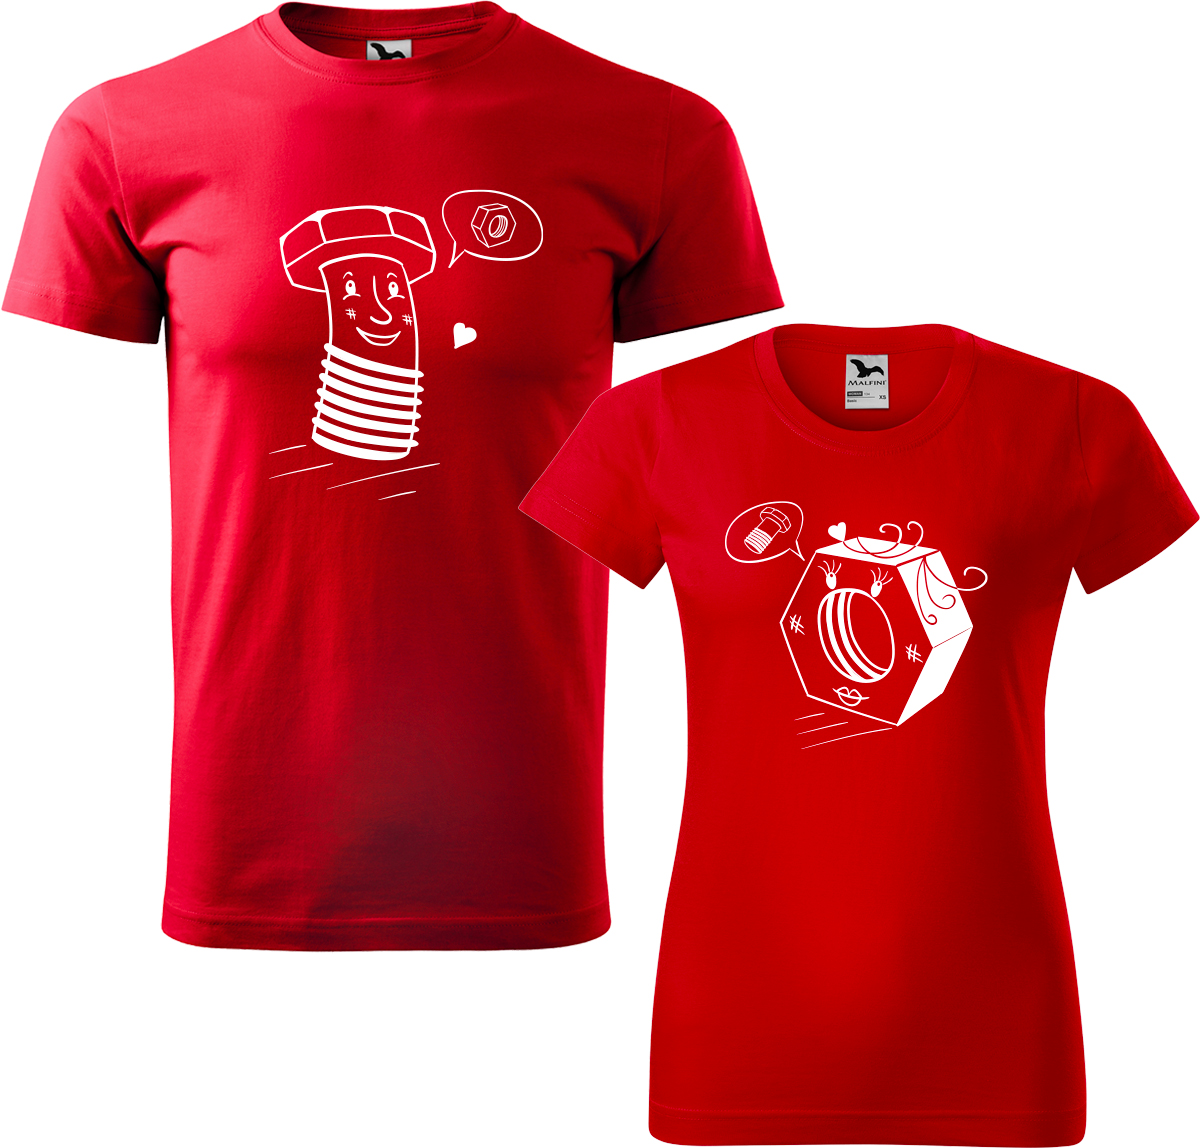 Trička pro páry - Šroubek a matička Barva: Červená (07), Velikost dámské tričko: L, Velikost pánské tričko: L